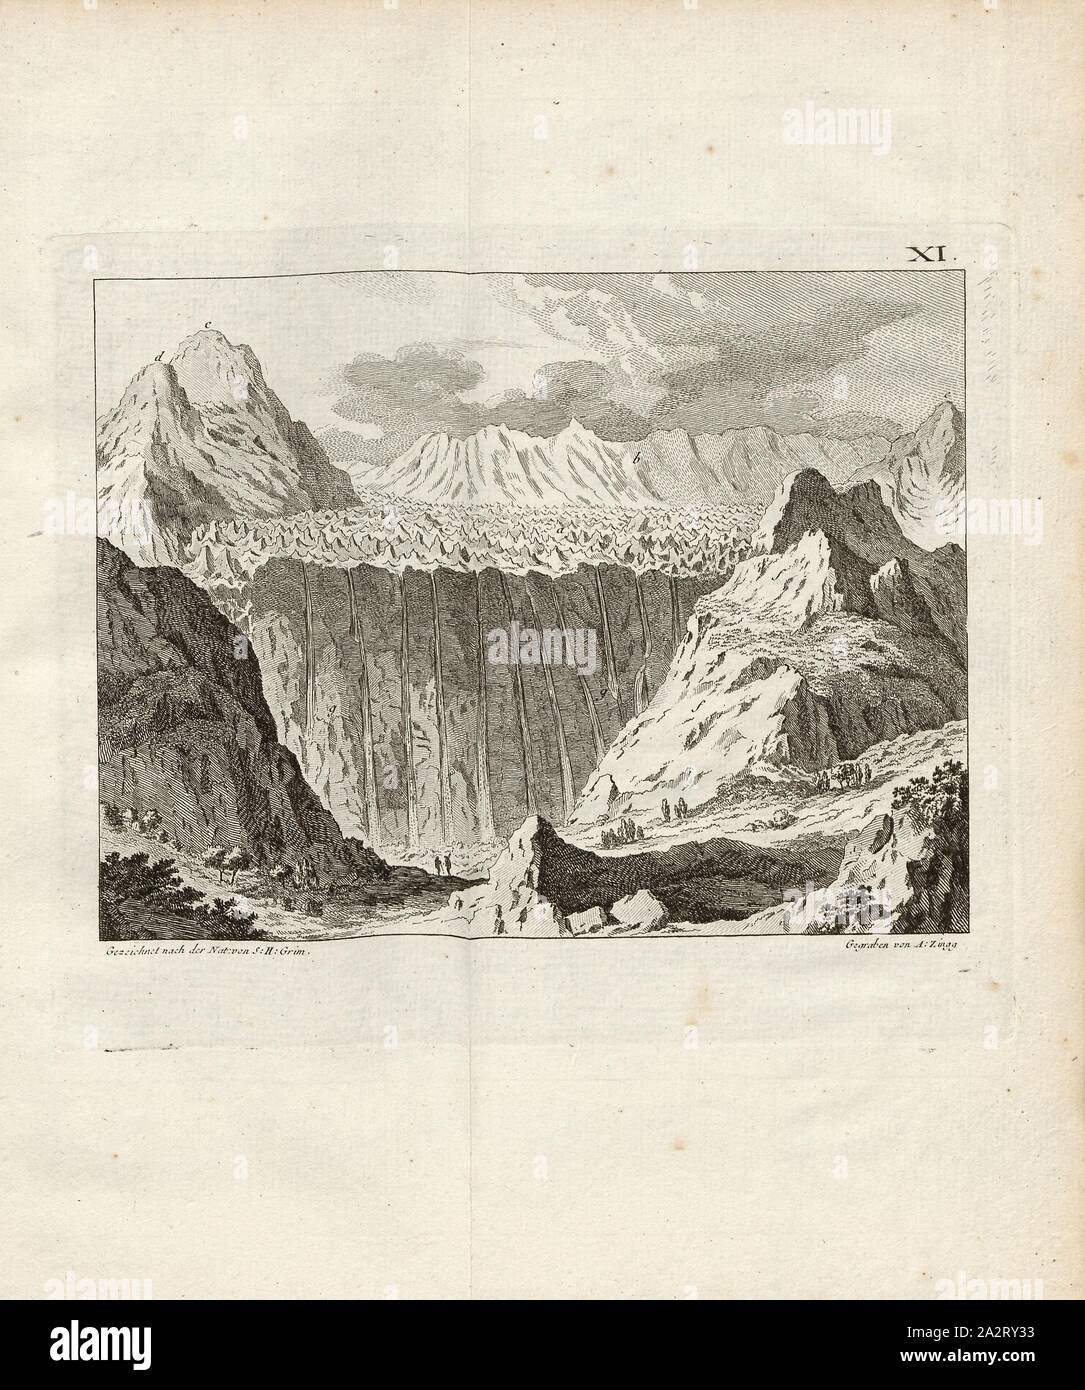 Le Ghelten Cluster de glace, vue de la Galt Glacier avec les grimpeurs à l'avant-plan et les Alpes bernoises en arrière-plan, signé : S. H. Grim ; A. Zingg, fig. 13, XI, p. 372 après, p. 408, Grim, S. H. (gezeichnet nach der Natur) ; Zingg, Adrian (gegraben), 1770, Gottlieb Sigmund Gruner Louis-Félix Guinement de Keralio ; : Histoire naturelle des glacieres de Suisse. Paris : Panckoucke, MDCCLXX [1770 Banque D'Images